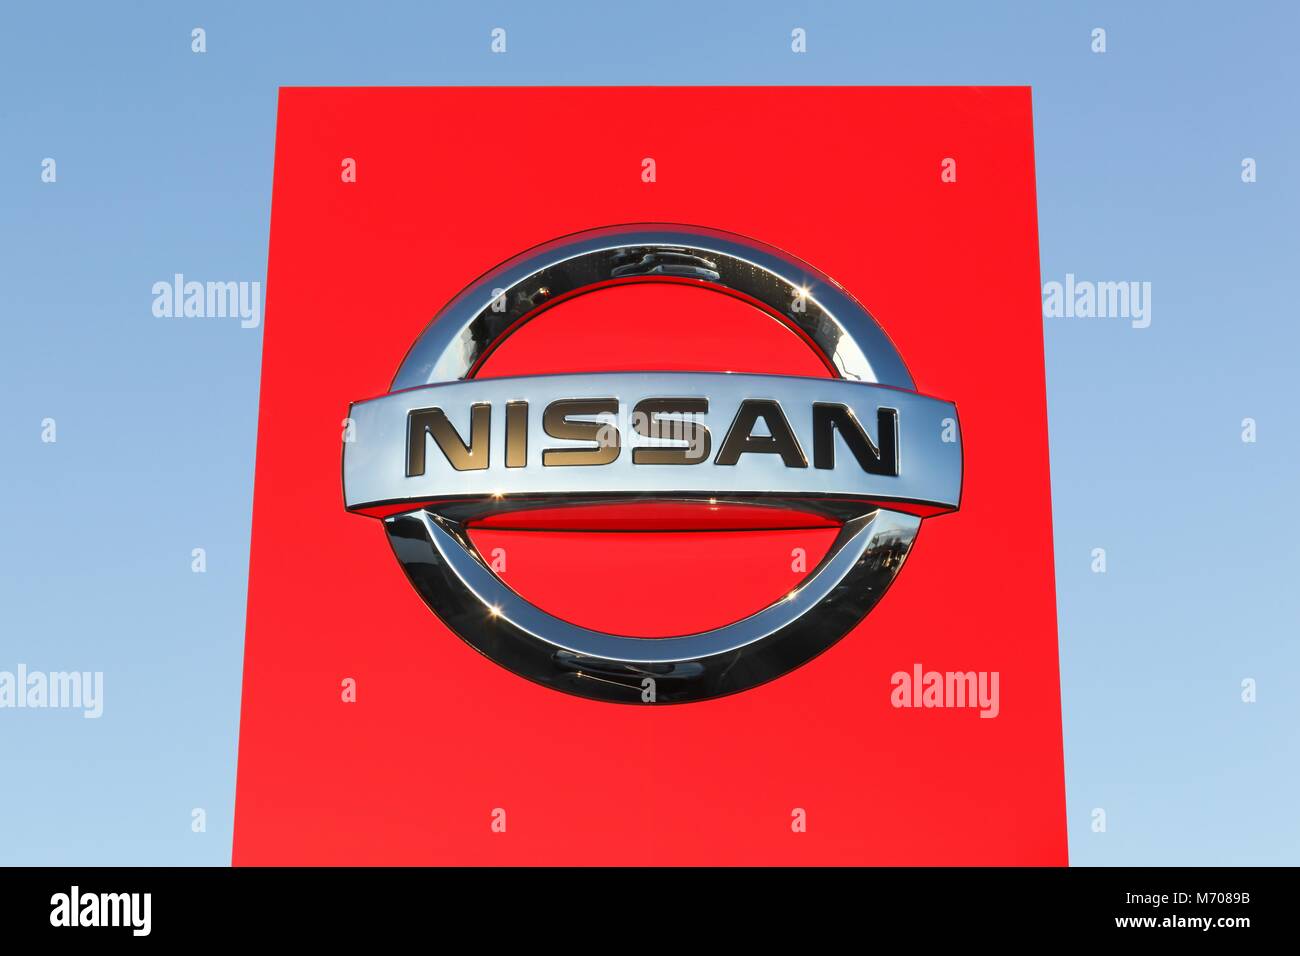 Risskov, Dänemark - 28. Oktober 2017: Nissan Logo auf einem Panel. Nissan ist eine Japanische multinationale Automobilhersteller Stockfoto